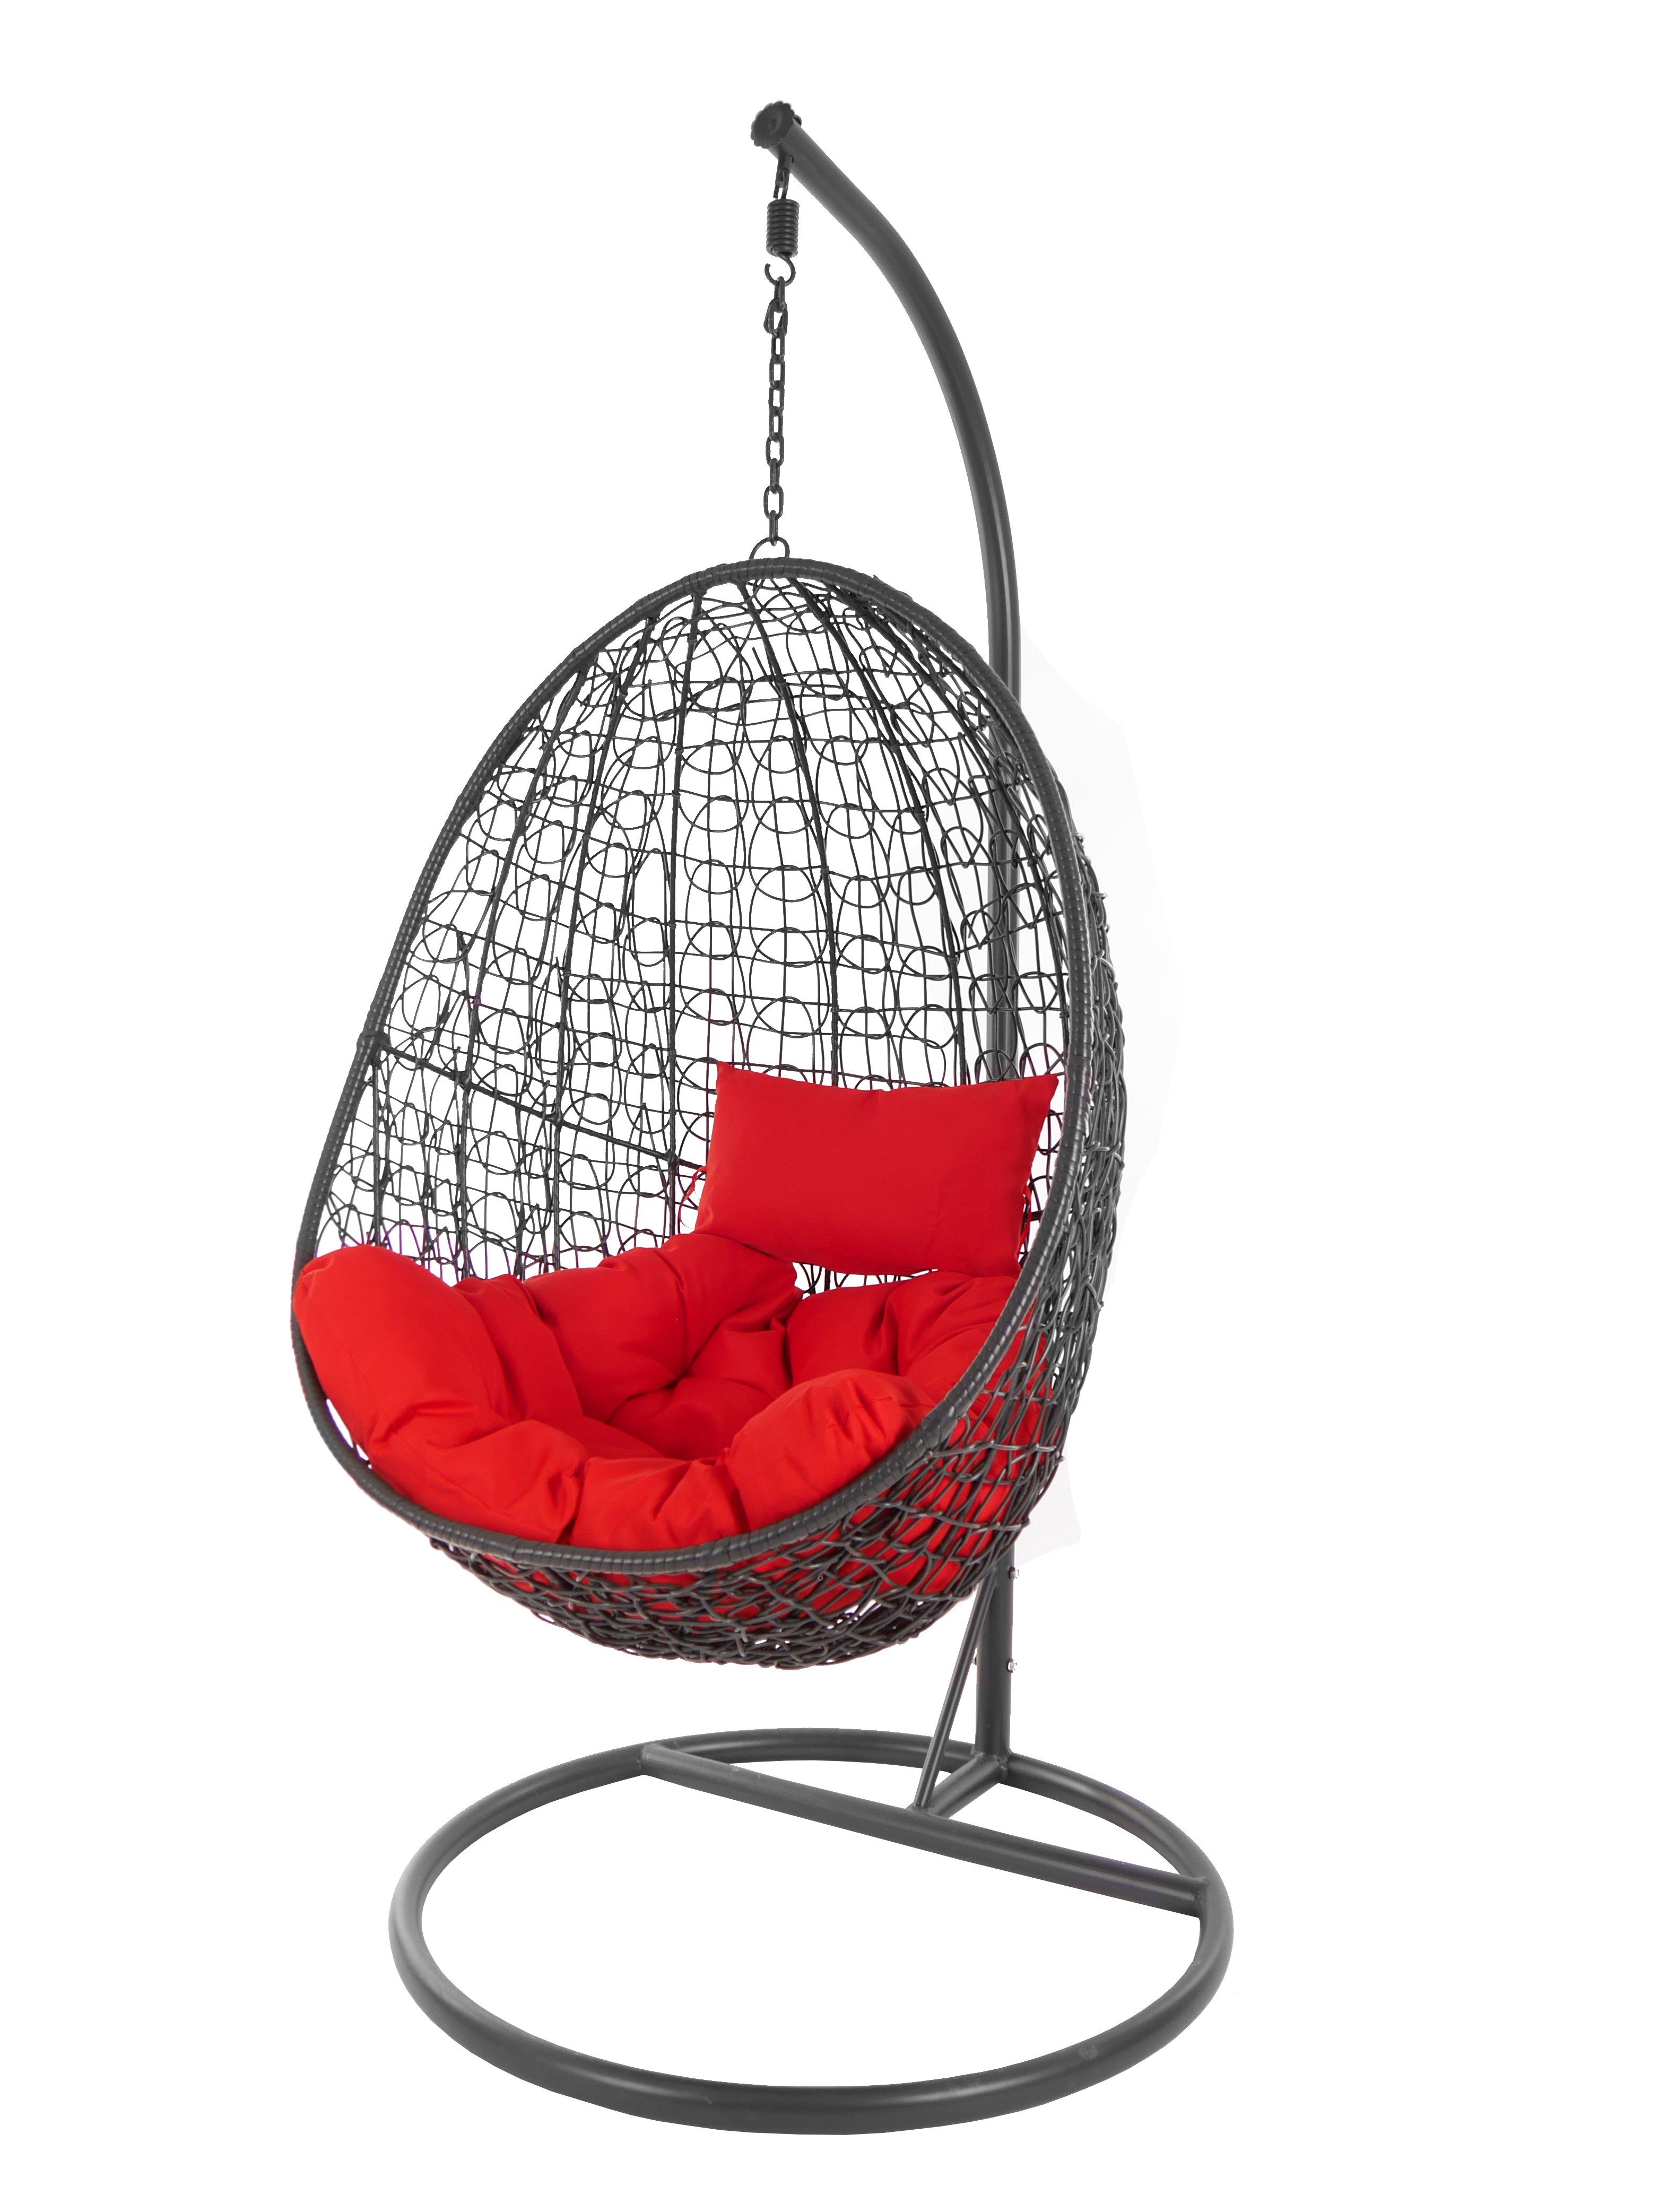 KIDEO Hängesessel Hängesessel Capdepera anthrazit, moderner Swing Chair, Schwebesessel mit Gestell und Kissen, Loungemöbel rot (3050 scarlet)